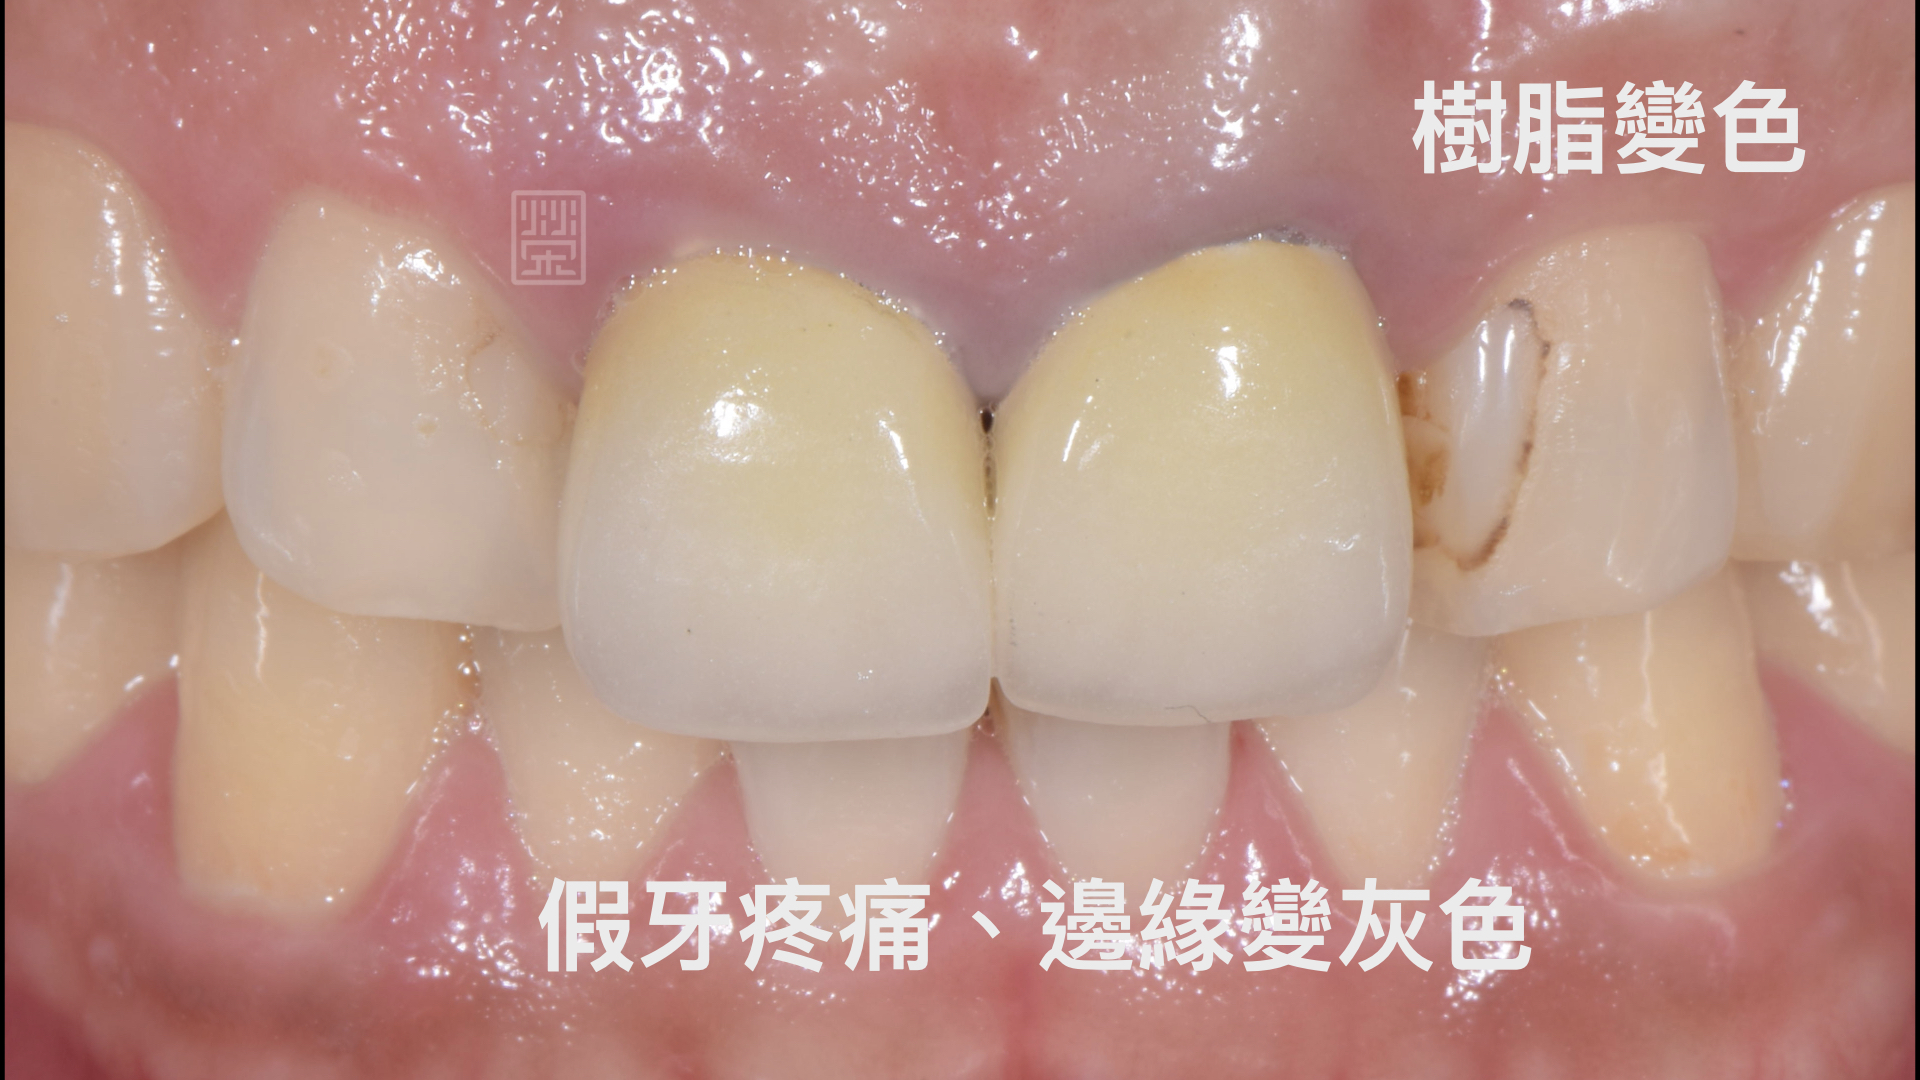 假牙邊緣變色、樹脂變色、牙齒變長